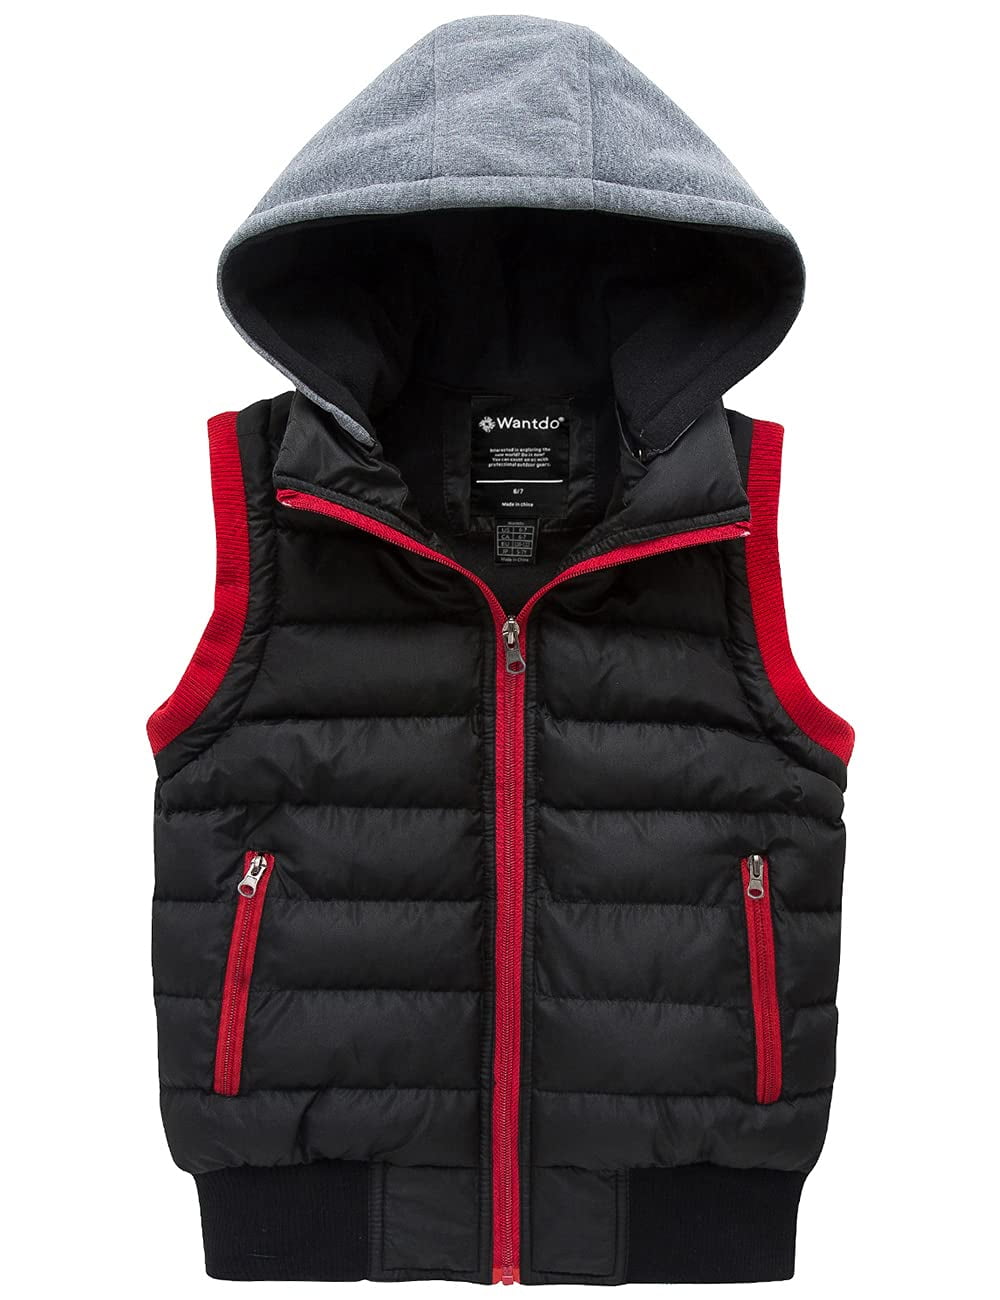 Wantdo Boy's Winter Coat Packable Sleeveless Vest Water-resistant ...